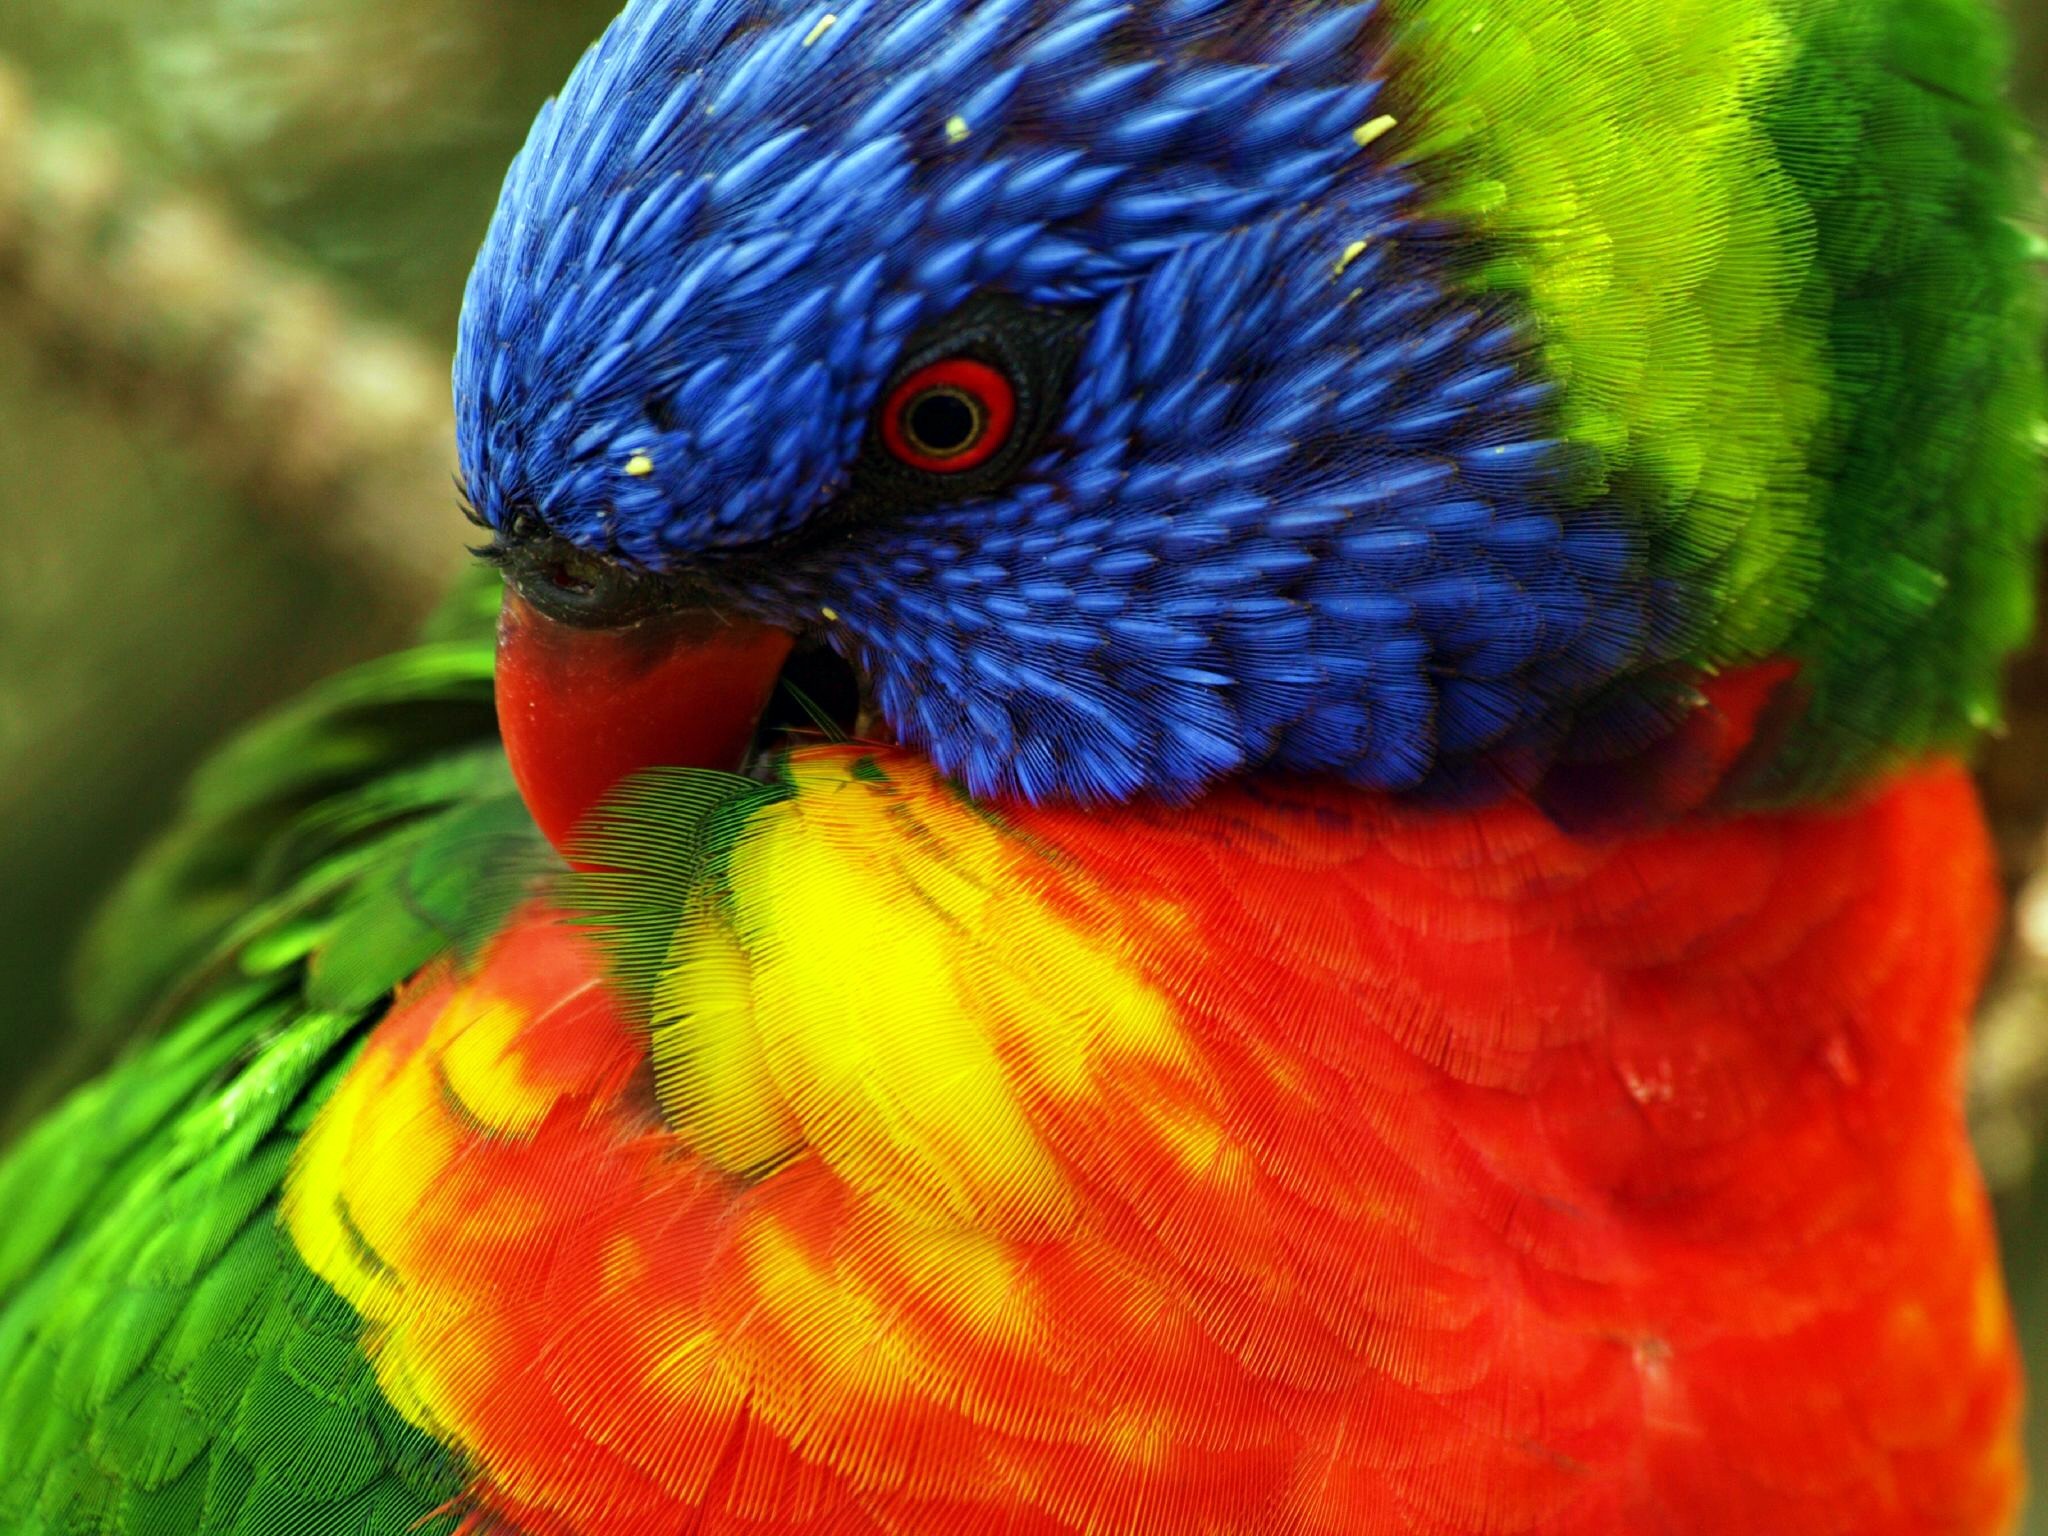 General 2048x1536 birds animals nature parrot lorikeet closeup